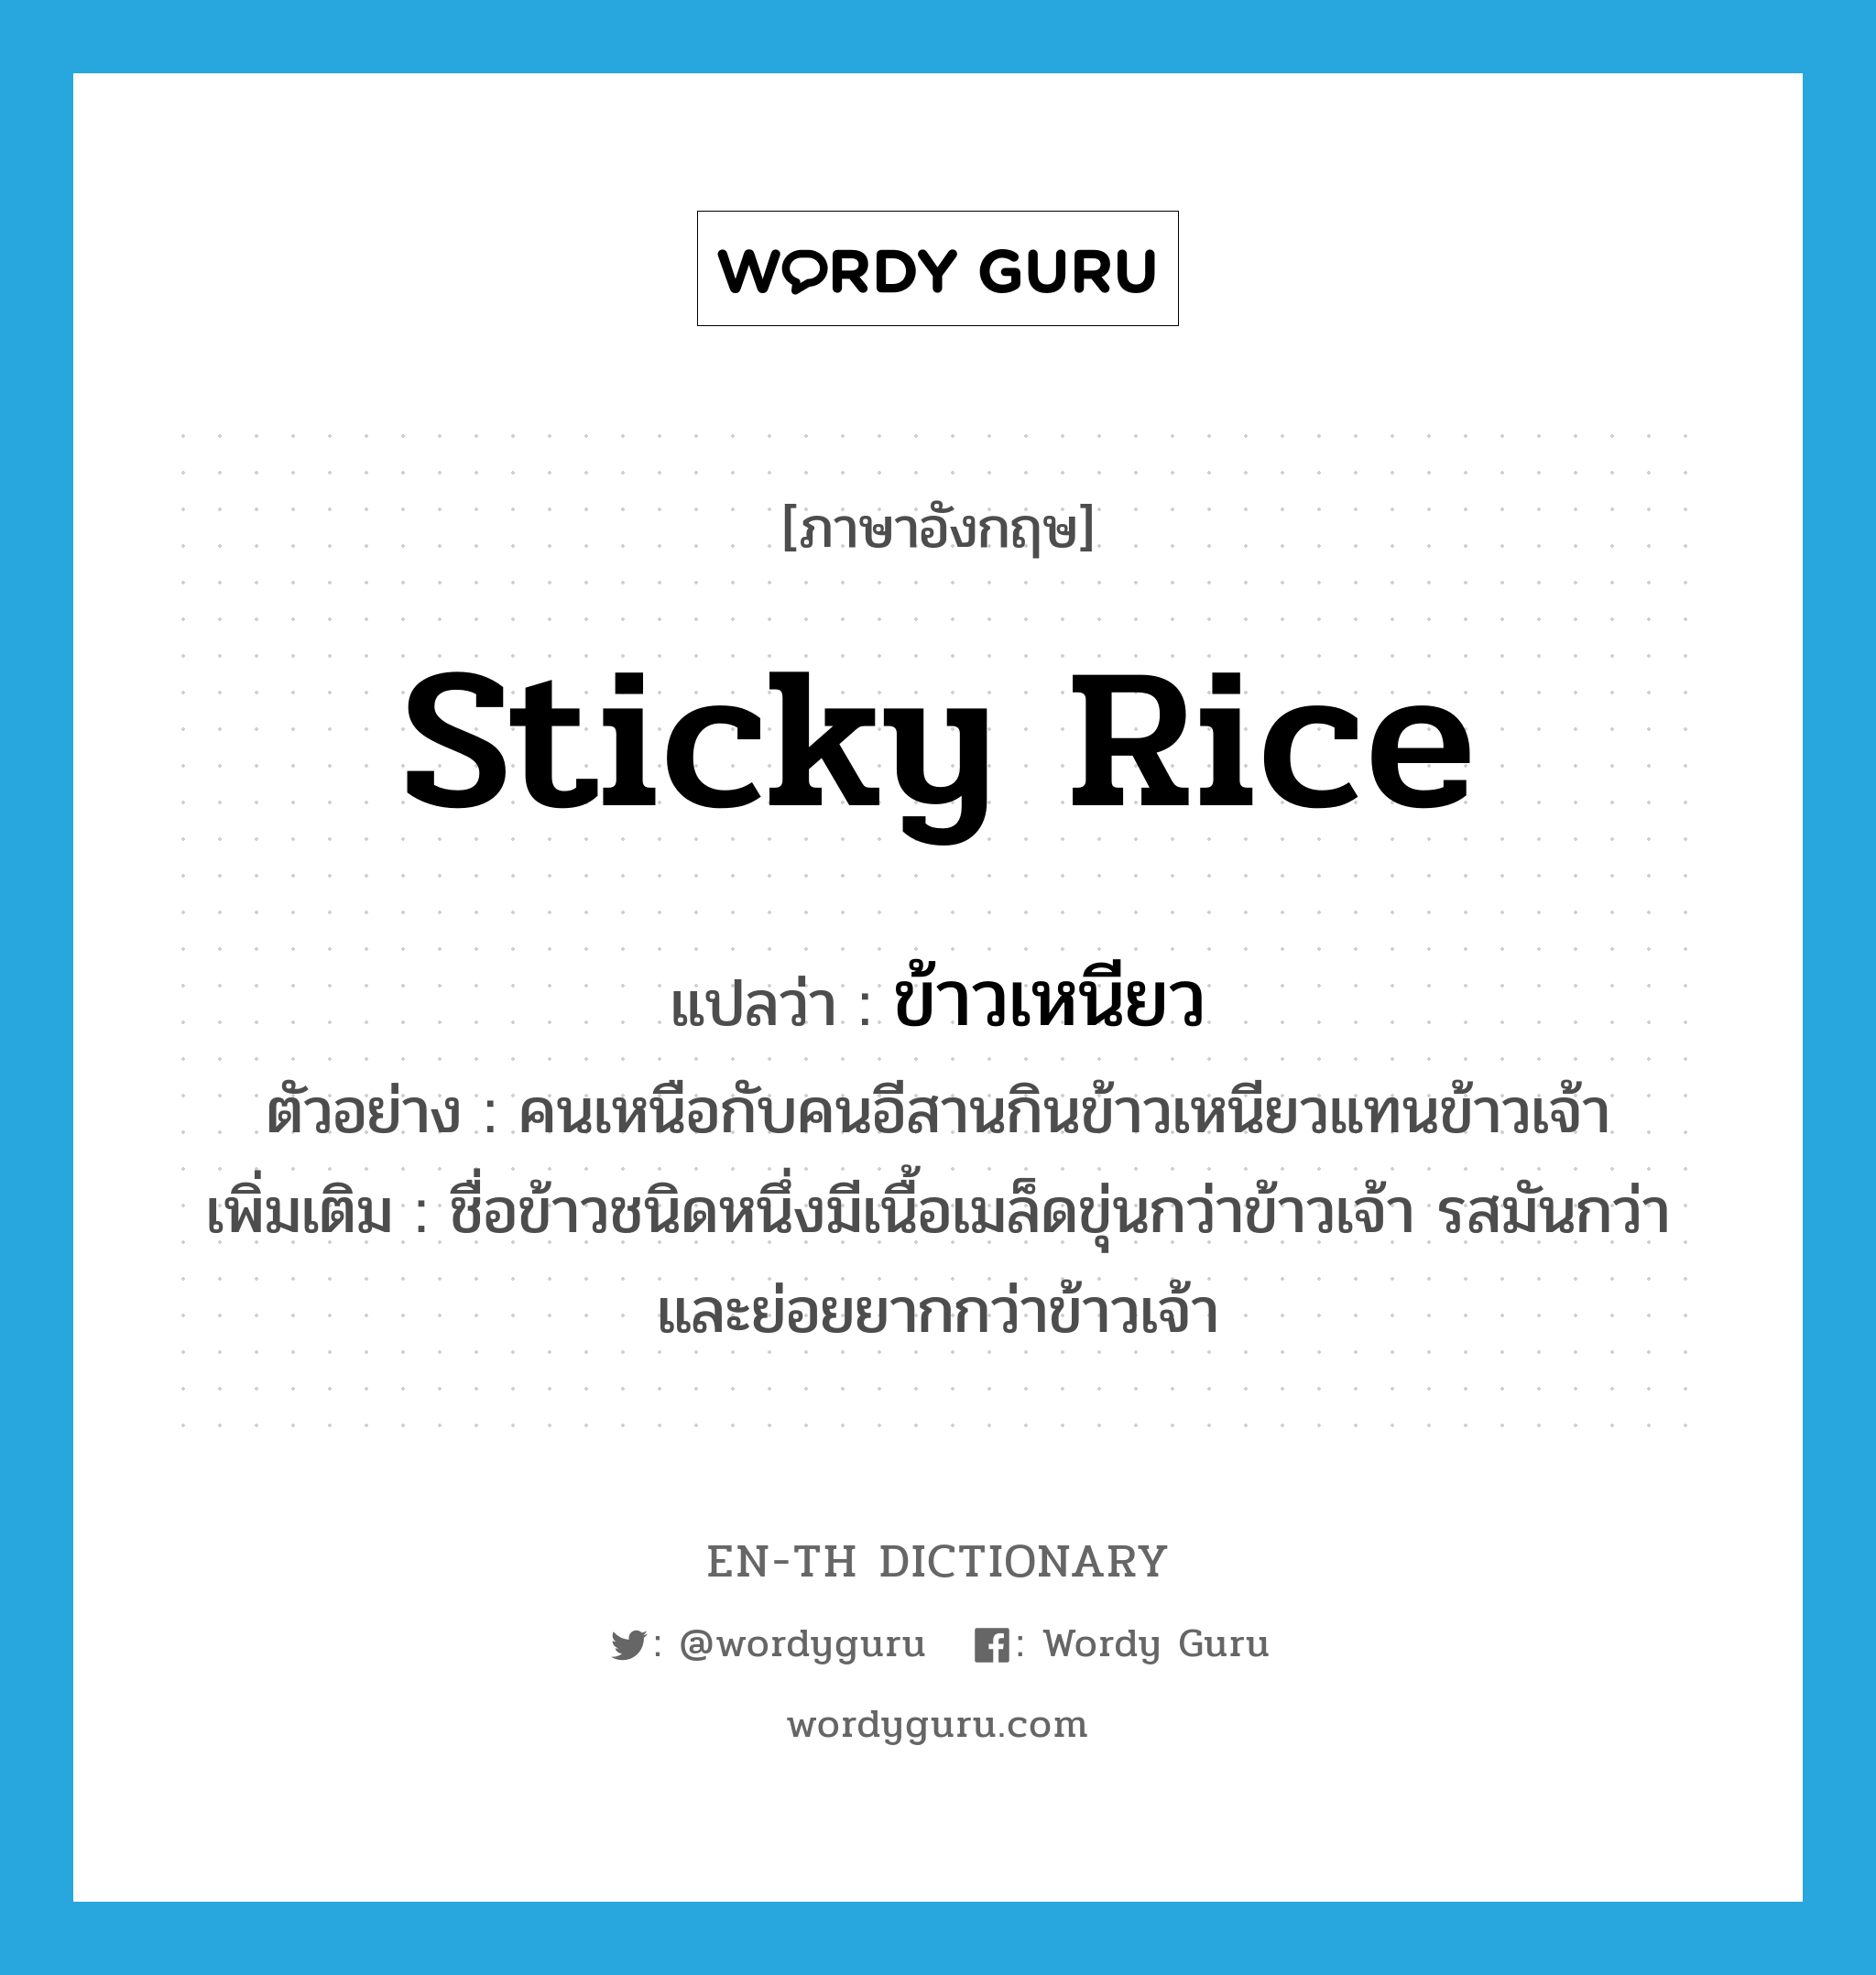 ข้าวเหนียว ภาษาอังกฤษ?, คำศัพท์ภาษาอังกฤษ ข้าวเหนียว แปลว่า sticky rice ประเภท N ตัวอย่าง คนเหนือกับคนอีสานกินข้าวเหนียวแทนข้าวเจ้า เพิ่มเติม ชื่อข้าวชนิดหนึ่งมีเนื้อเมล็ดขุ่นกว่าข้าวเจ้า รสมันกว่าและย่อยยากกว่าข้าวเจ้า หมวด N